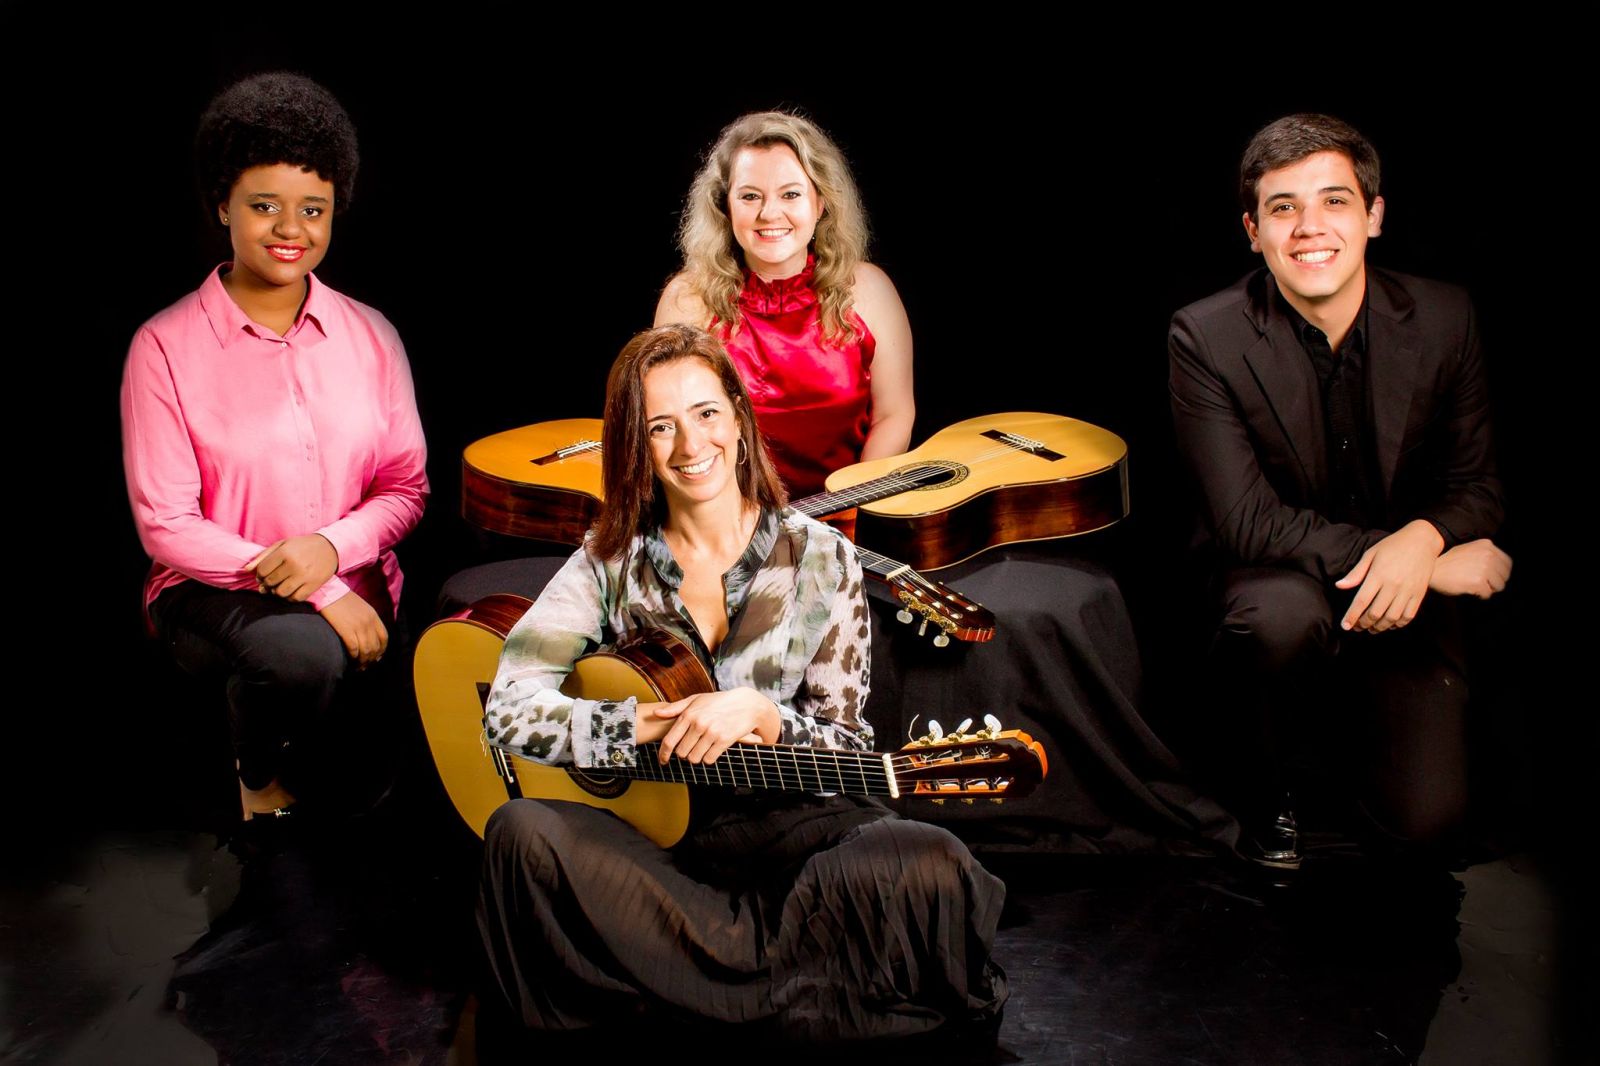 Projeto Guri é modelo no uso da música como meio de inclusão social - Quarteto Abayomi (Gabriele Leite, Josiane Gonçalves, Juliana Oliveira e Guilherme Sparrapan)